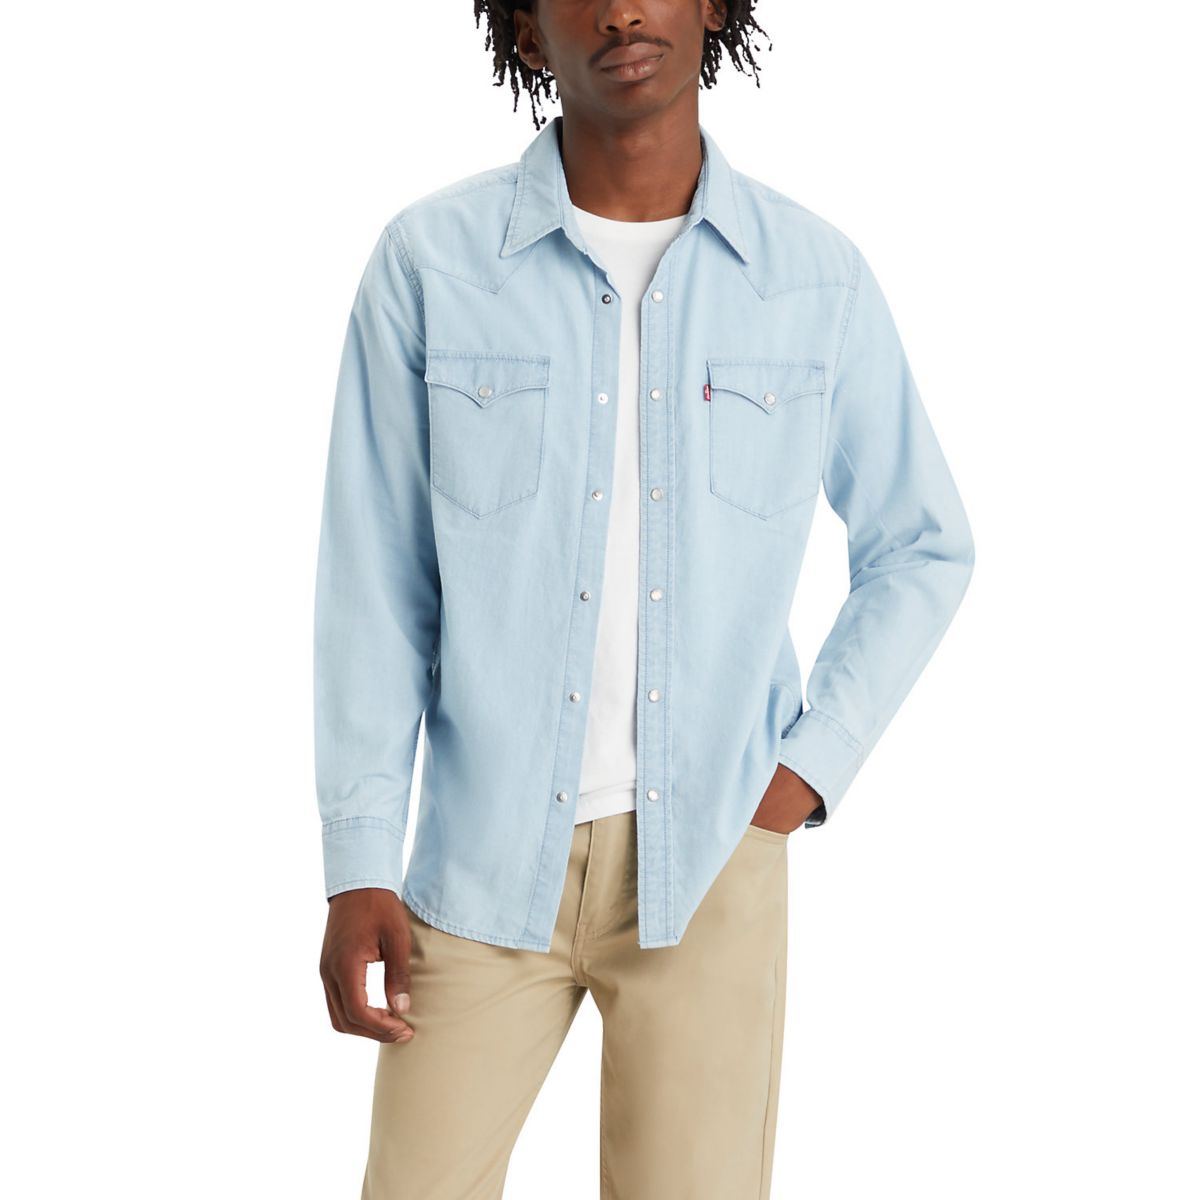 Мужская рубашка на пуговицах классического стандартного кроя Levi's® в стиле вестерн Levi's®